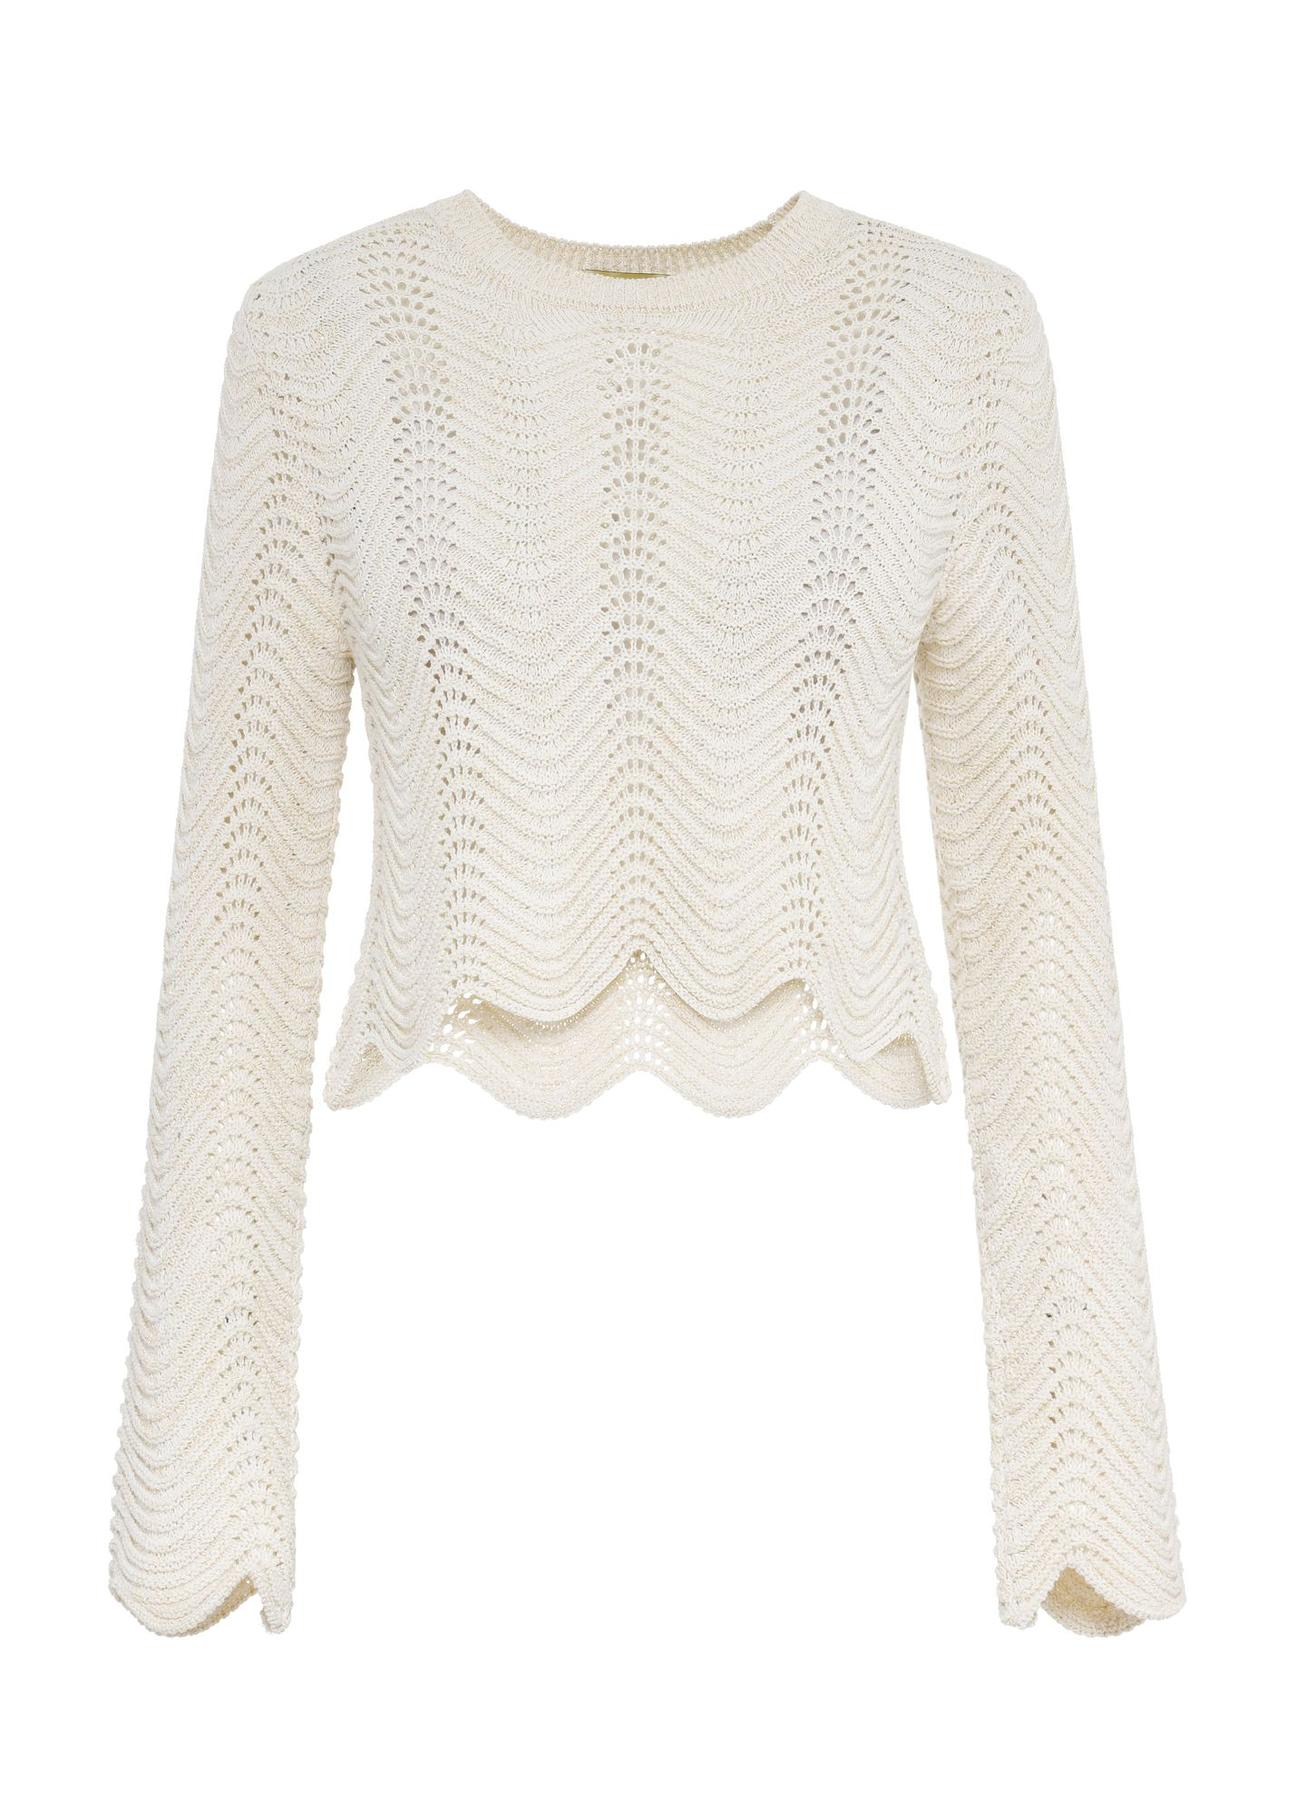 Kremowy ażurowy sweter damski SWEDT-0229-81(W24)-05